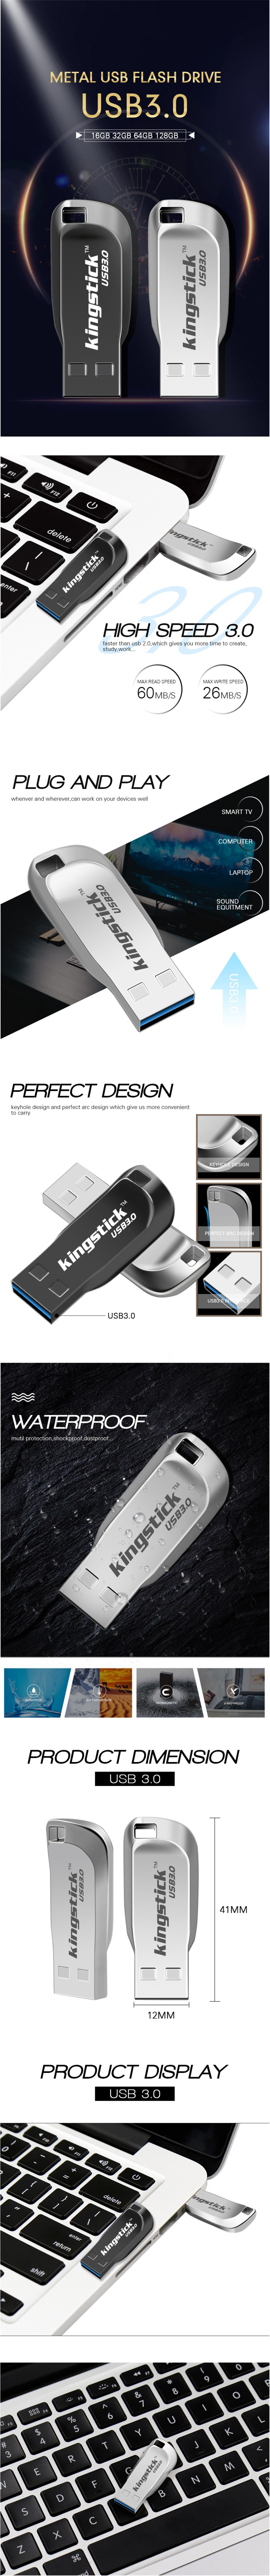 Kingstick-XC-USB-KK-33-Mini-USB-Flash-Drive-USB-30-16GB-32GB-64GB-128GB-Metal-Flash-Memory-Card-USB--1480570-1